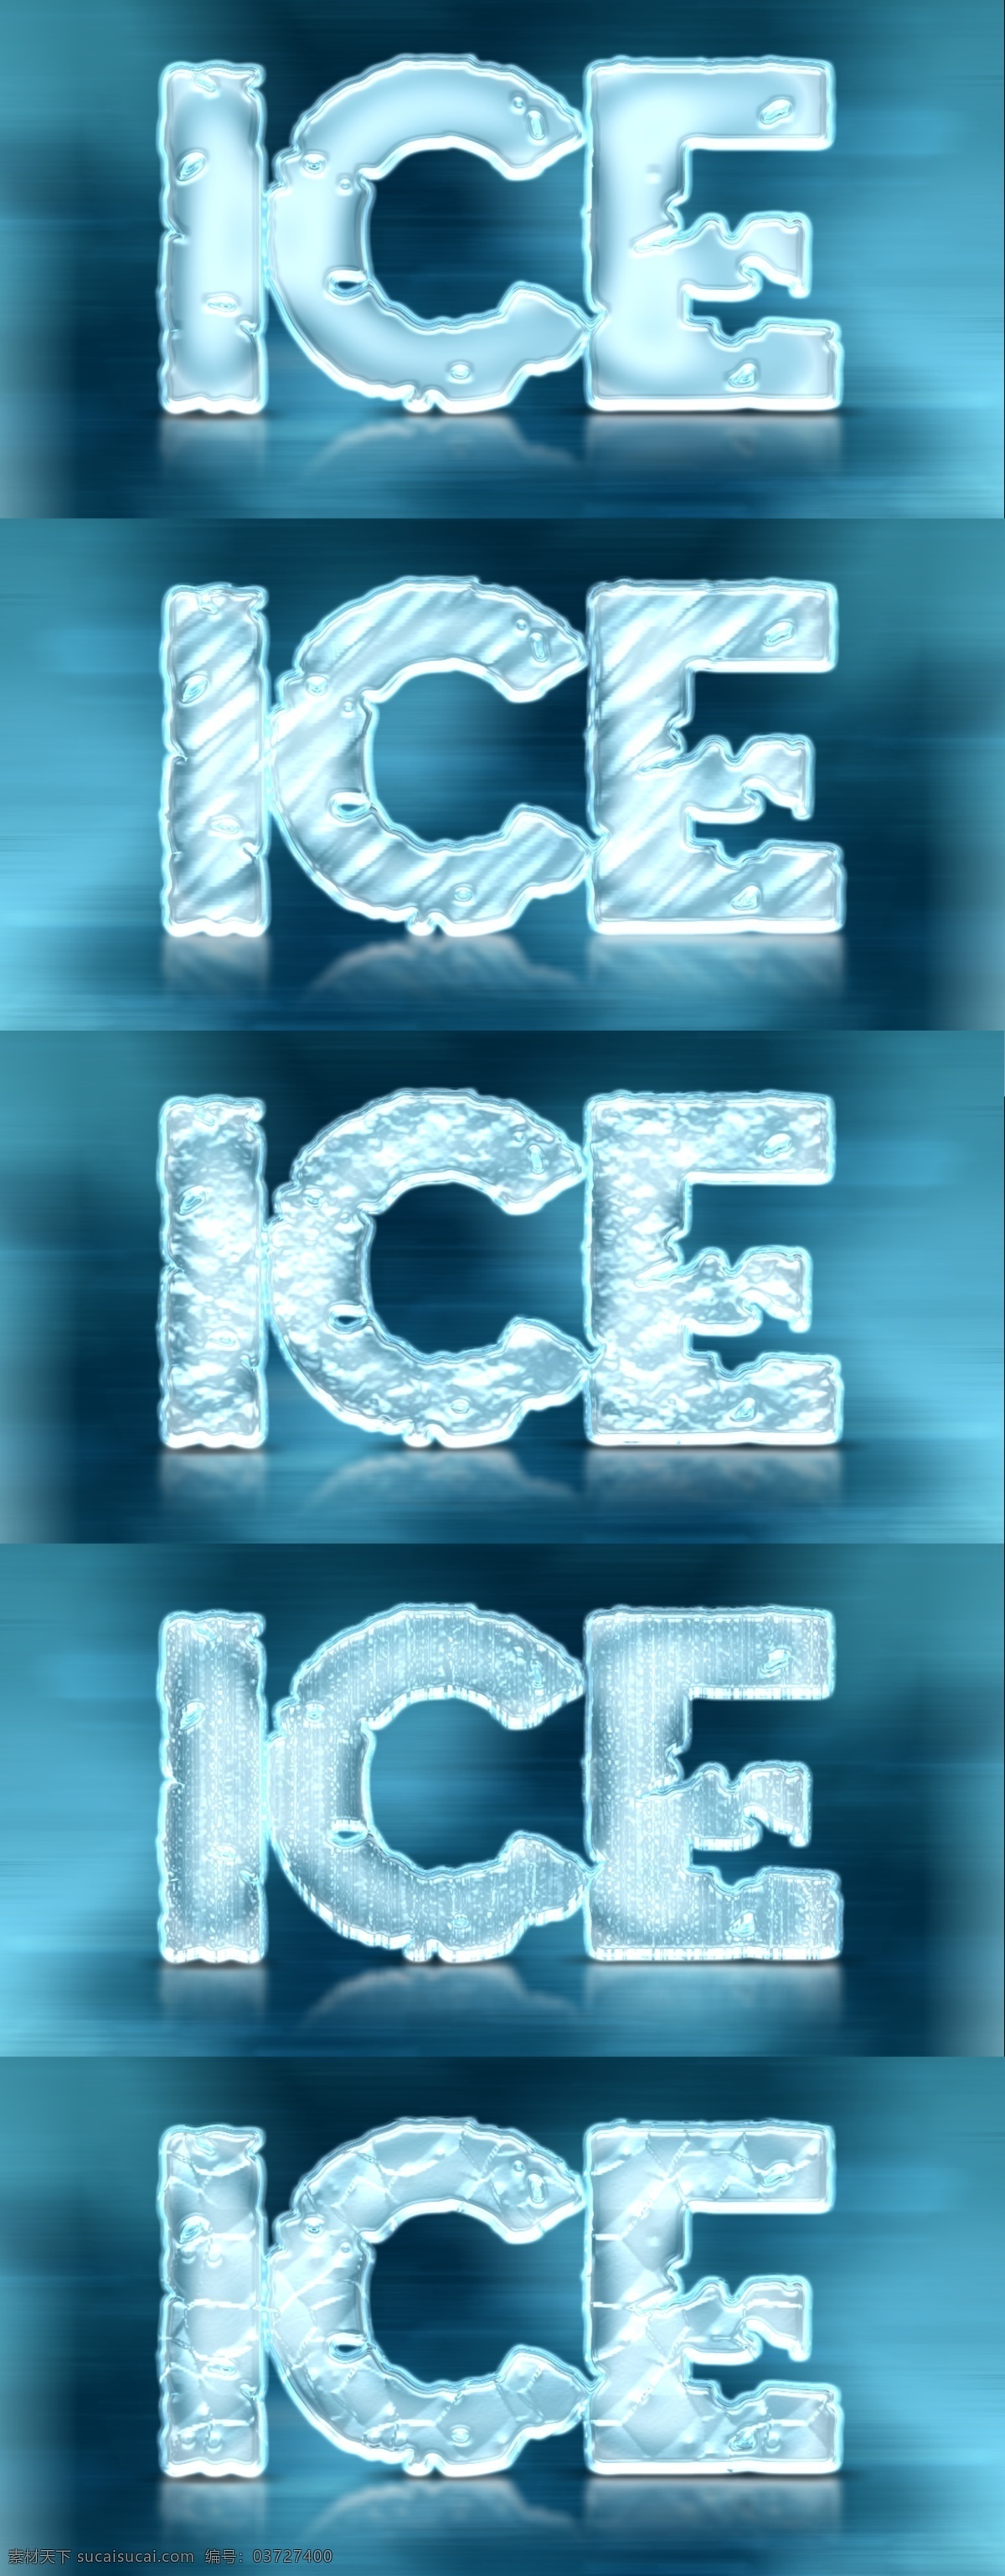 超酷 冬季 冰冻 效果 字体 样式 ps样式 ps素材 字体样式 冬季样式 冰冻效果 冰冻样式 冰爽样式 冰块样式 3d样式 立体字样式 冰冻质感 3d ice cool freeze snow effects styles 青色 天蓝色